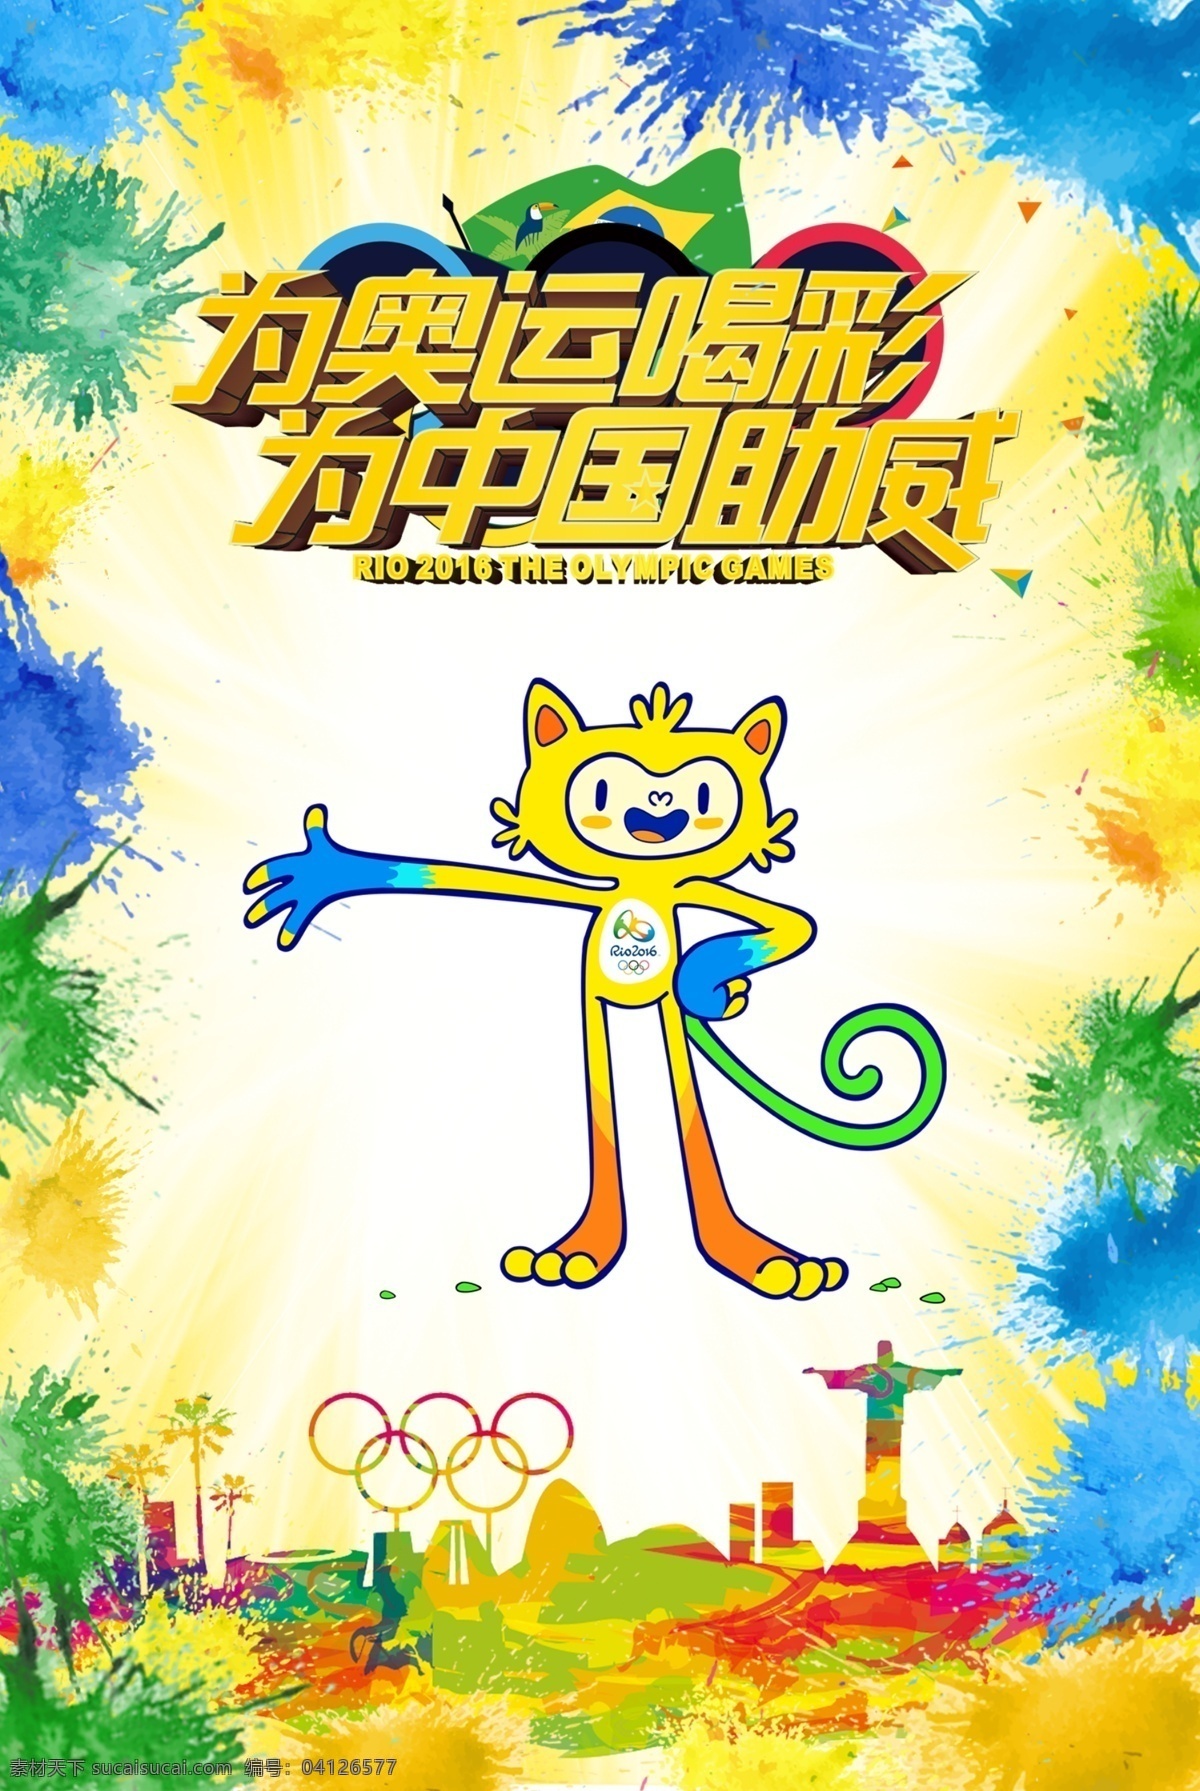 里约 奥运会 2016 中国 加油 巴西 剪影 吉祥物 为中国加油 色彩绚丽 墨滴效果黄色 清新 版面 商家 奥运 主题 海报 白色